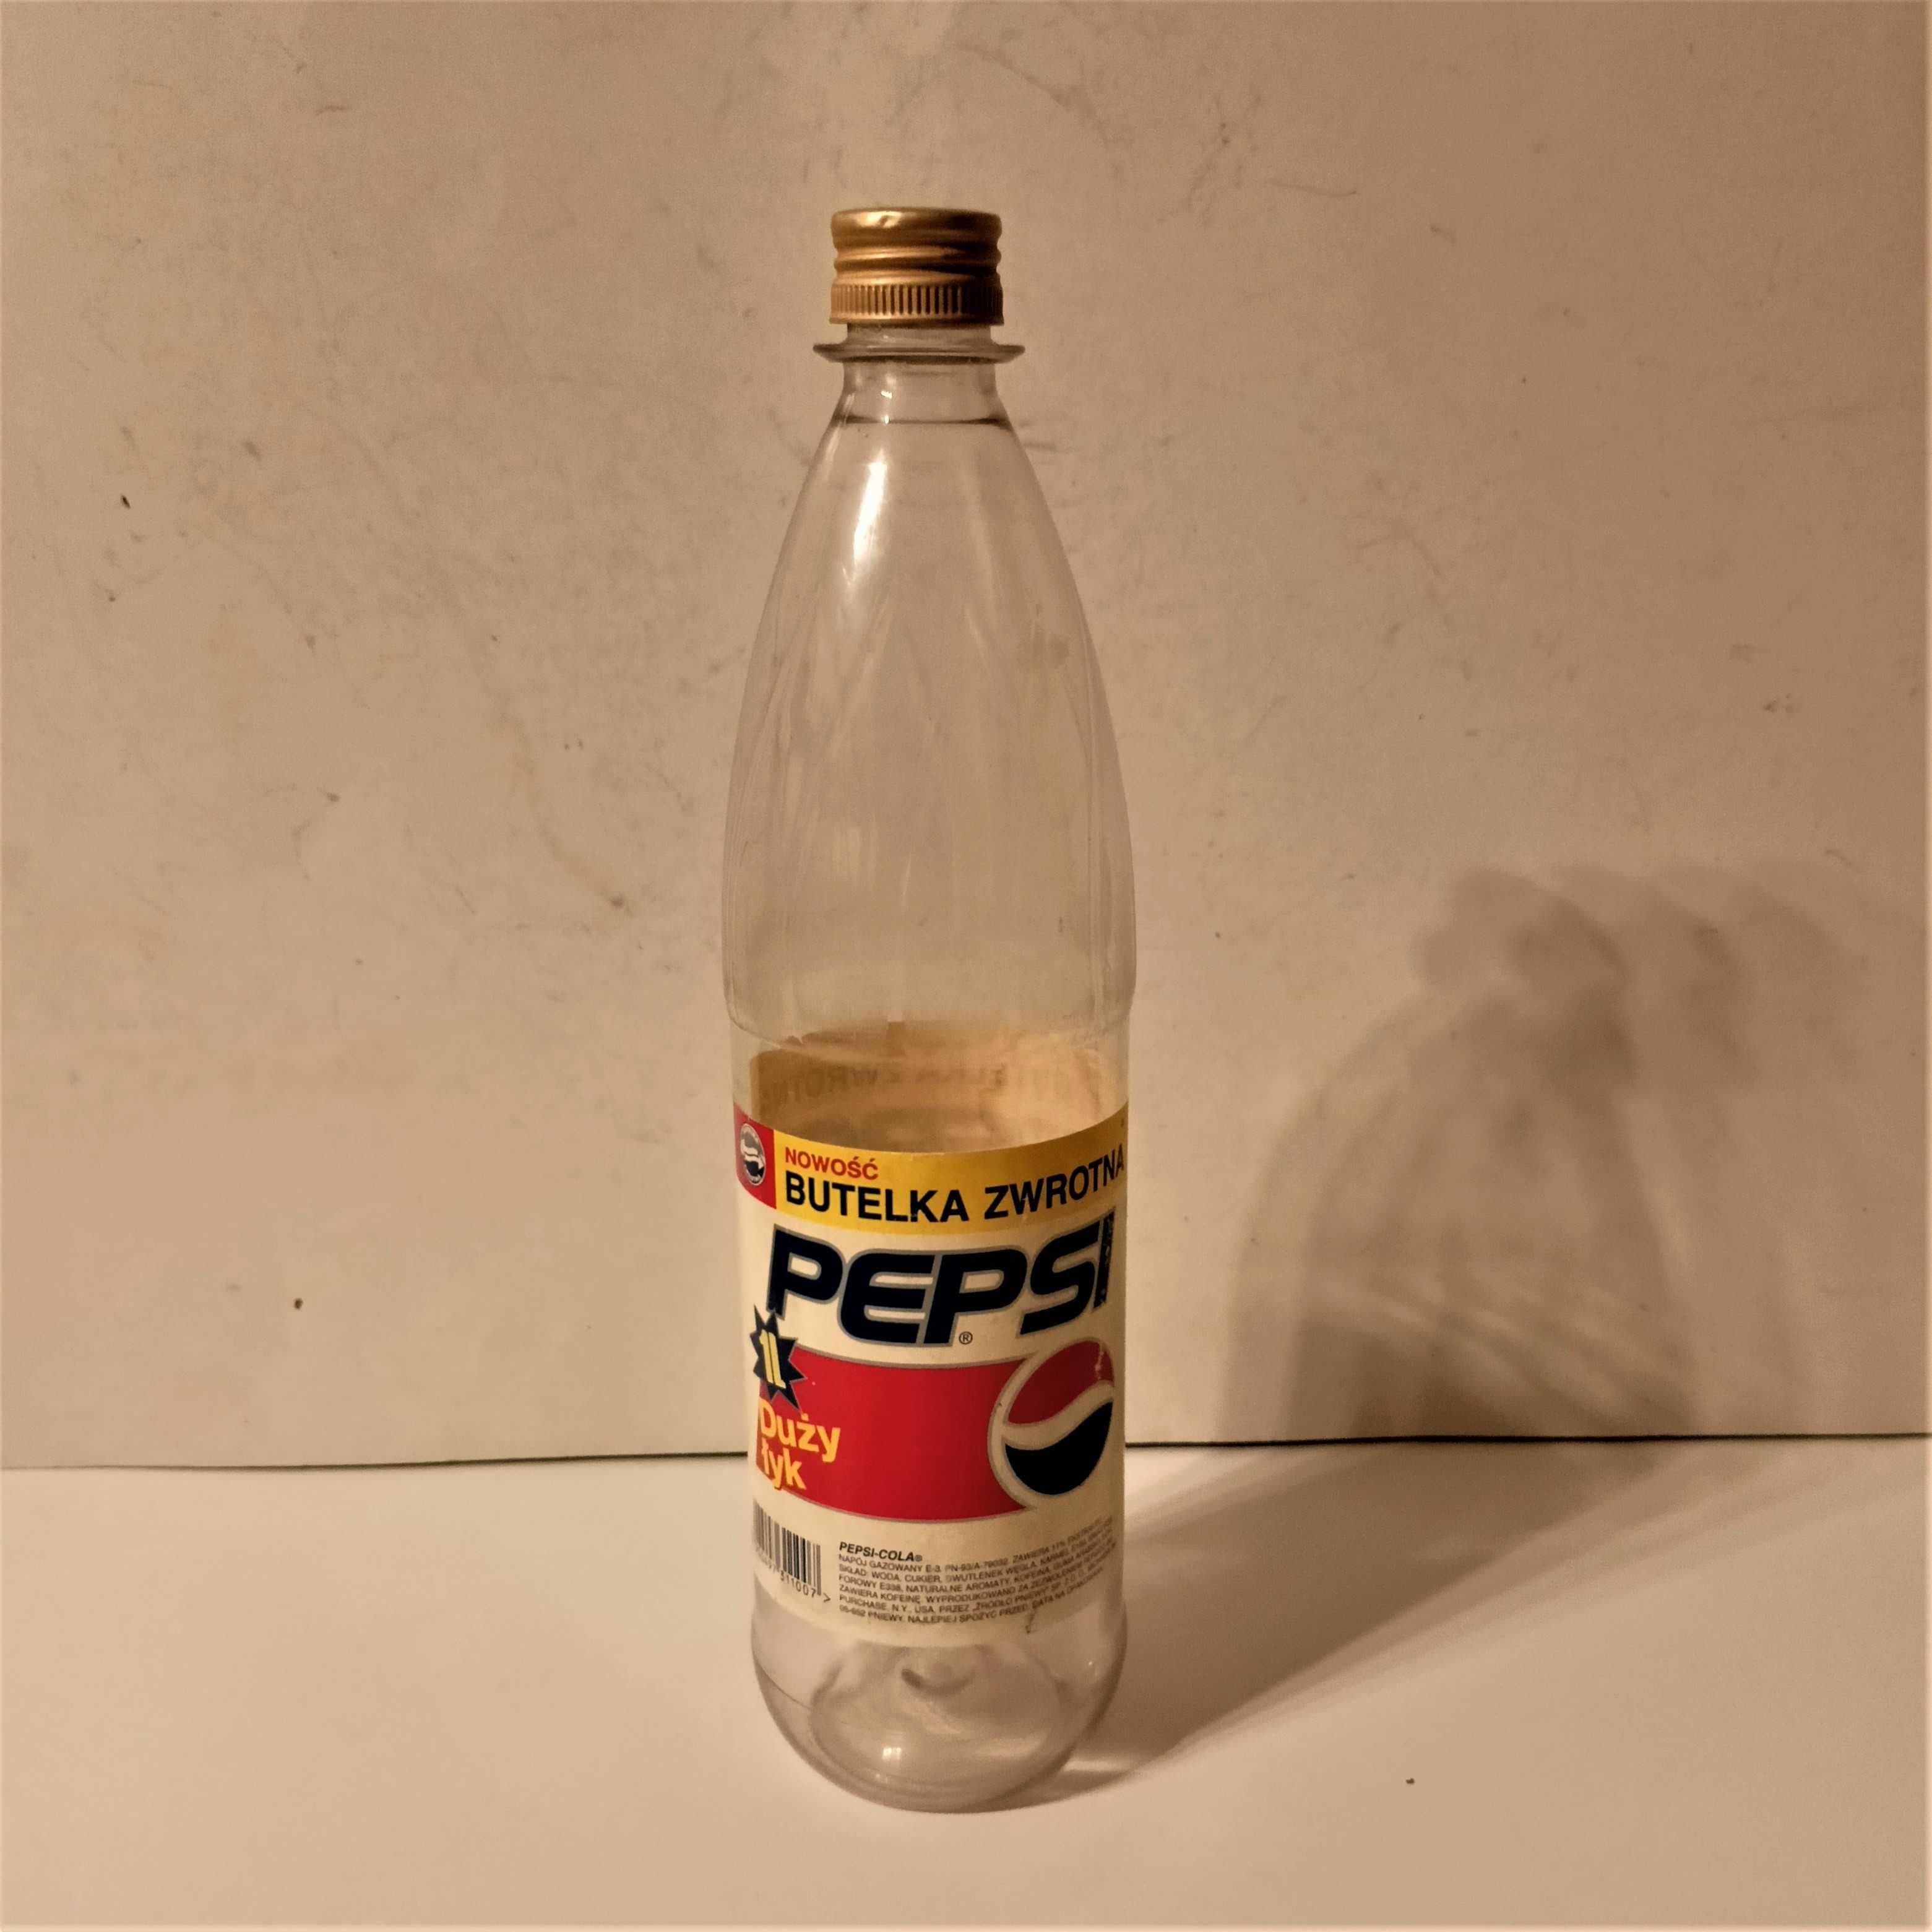 Stara butelka zwrotna Pepsi Duży łyk z tworzywa 1 L z PRL-u